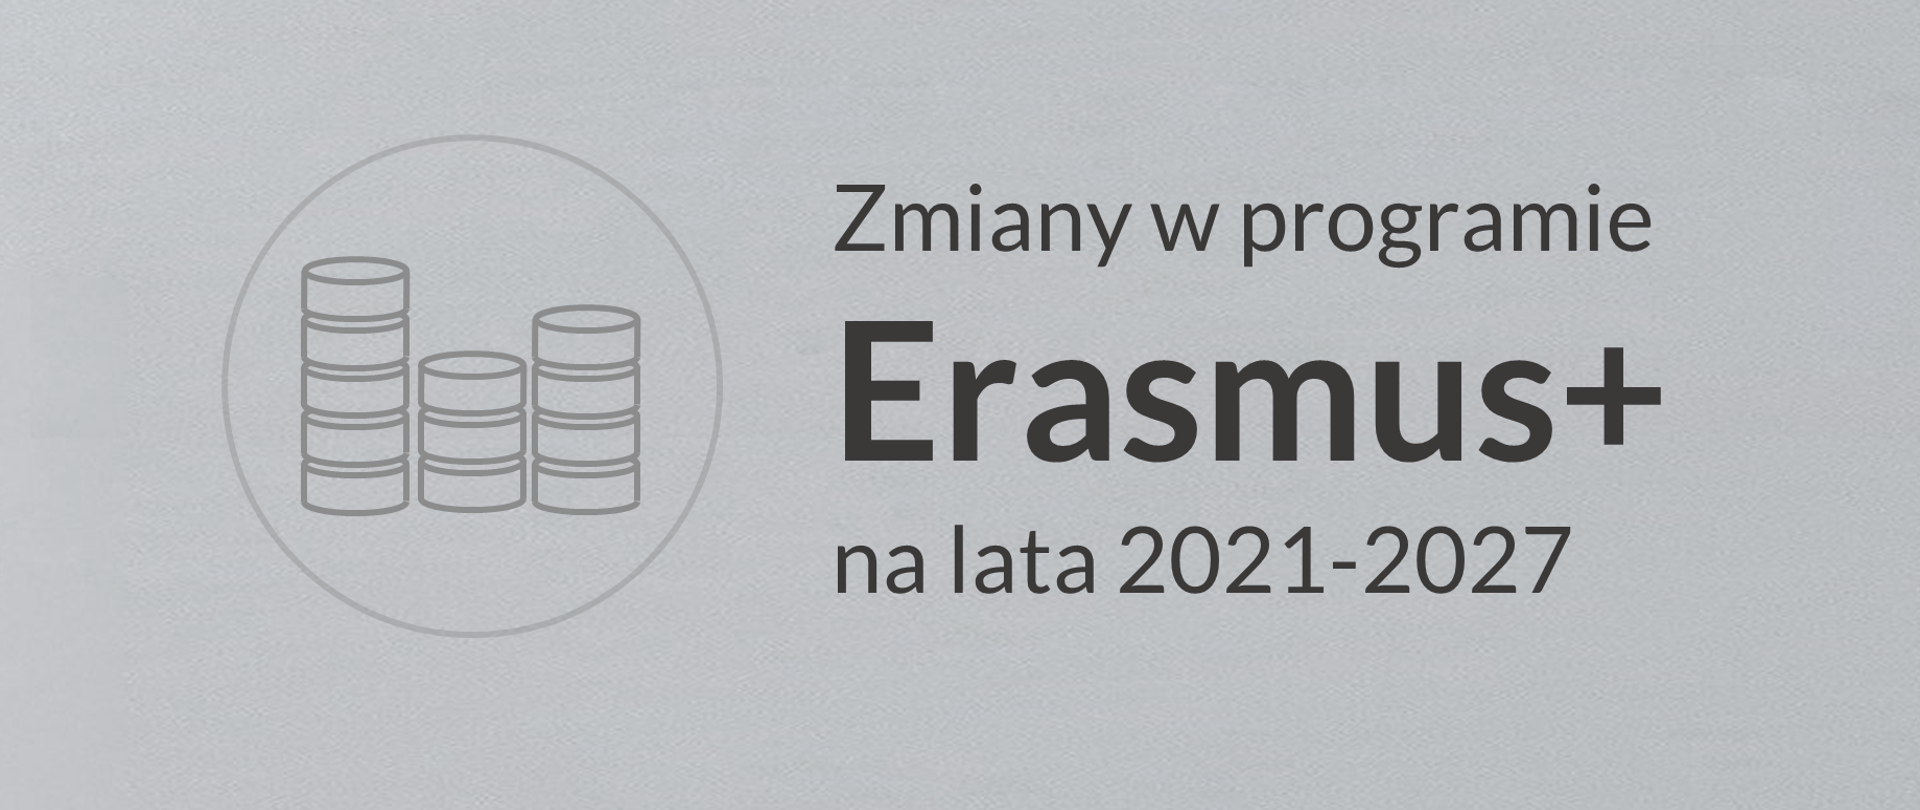 Szara grafika z piktogramem przedstawiającym ułożone pionowo monety. Napis na grafice Zmiany w programie Erasmus+ na lata 2021-2027 